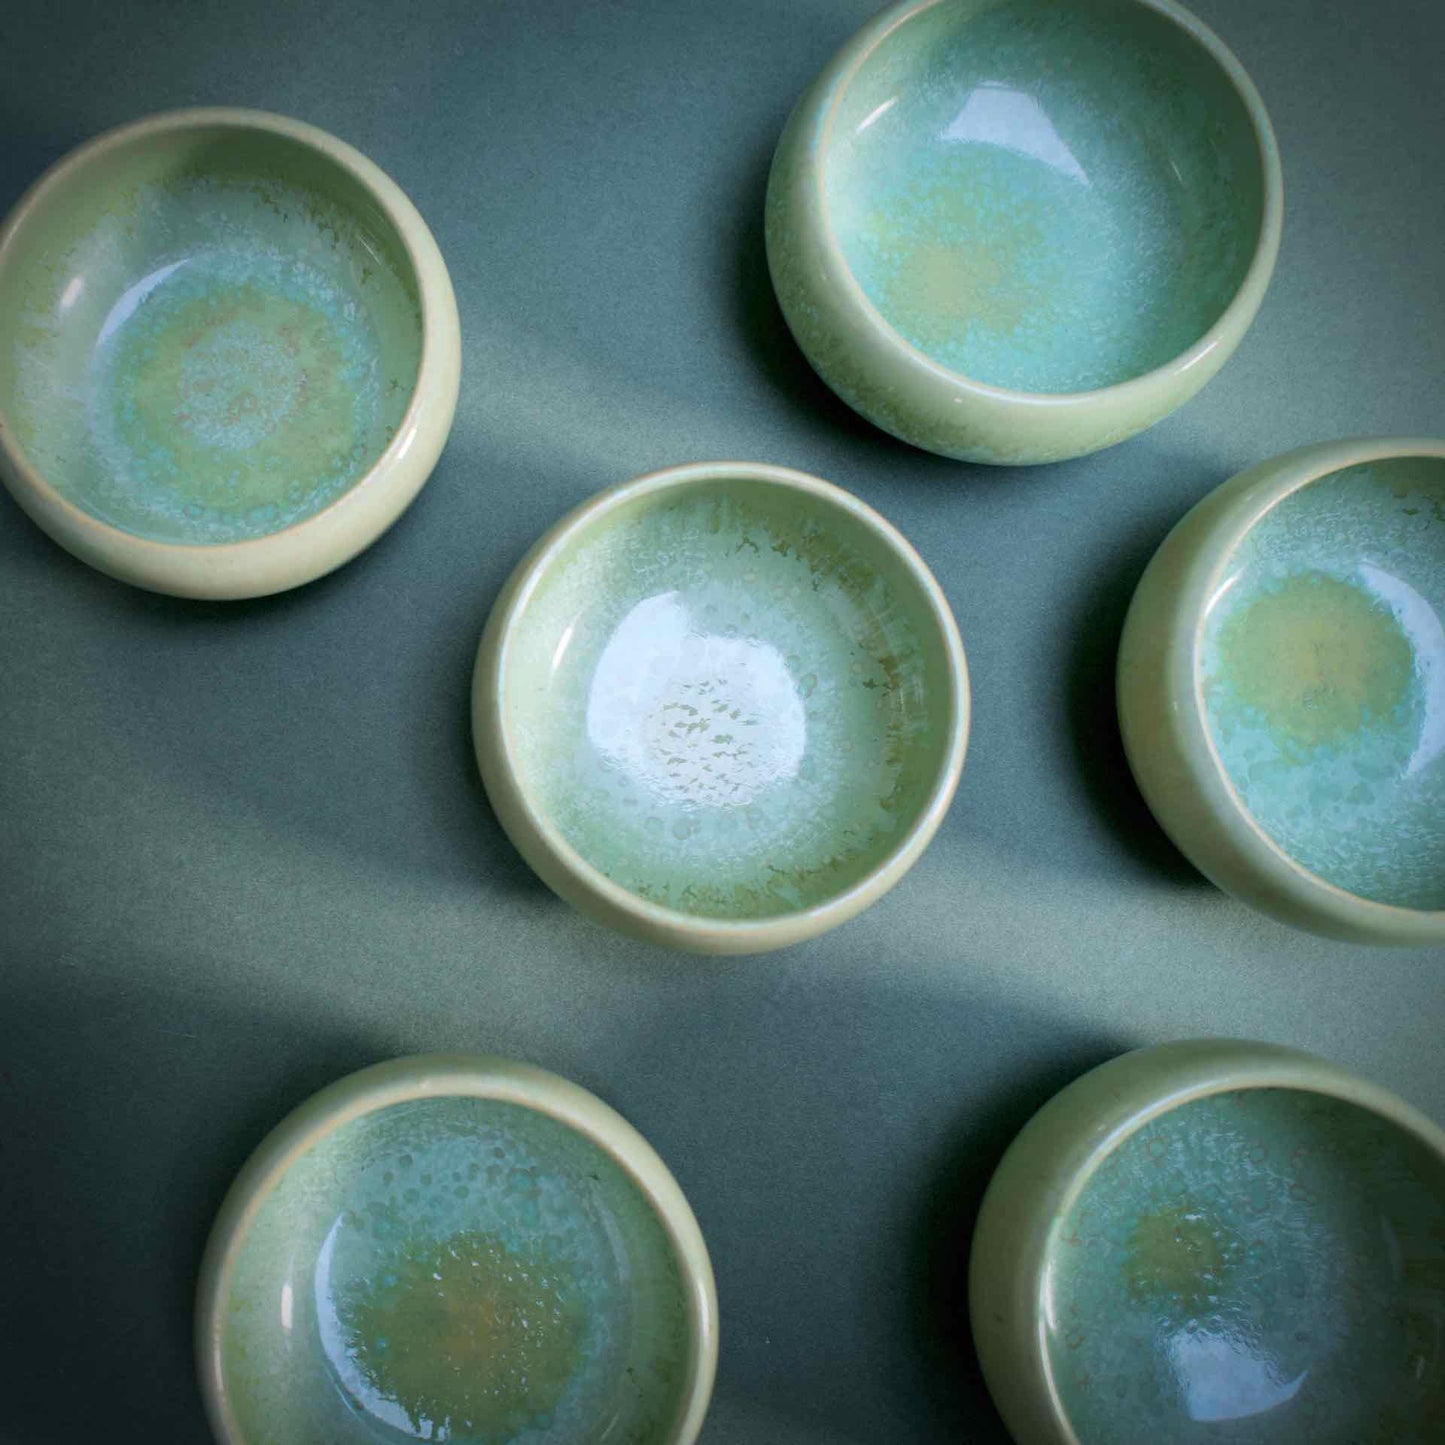 Green small bowls